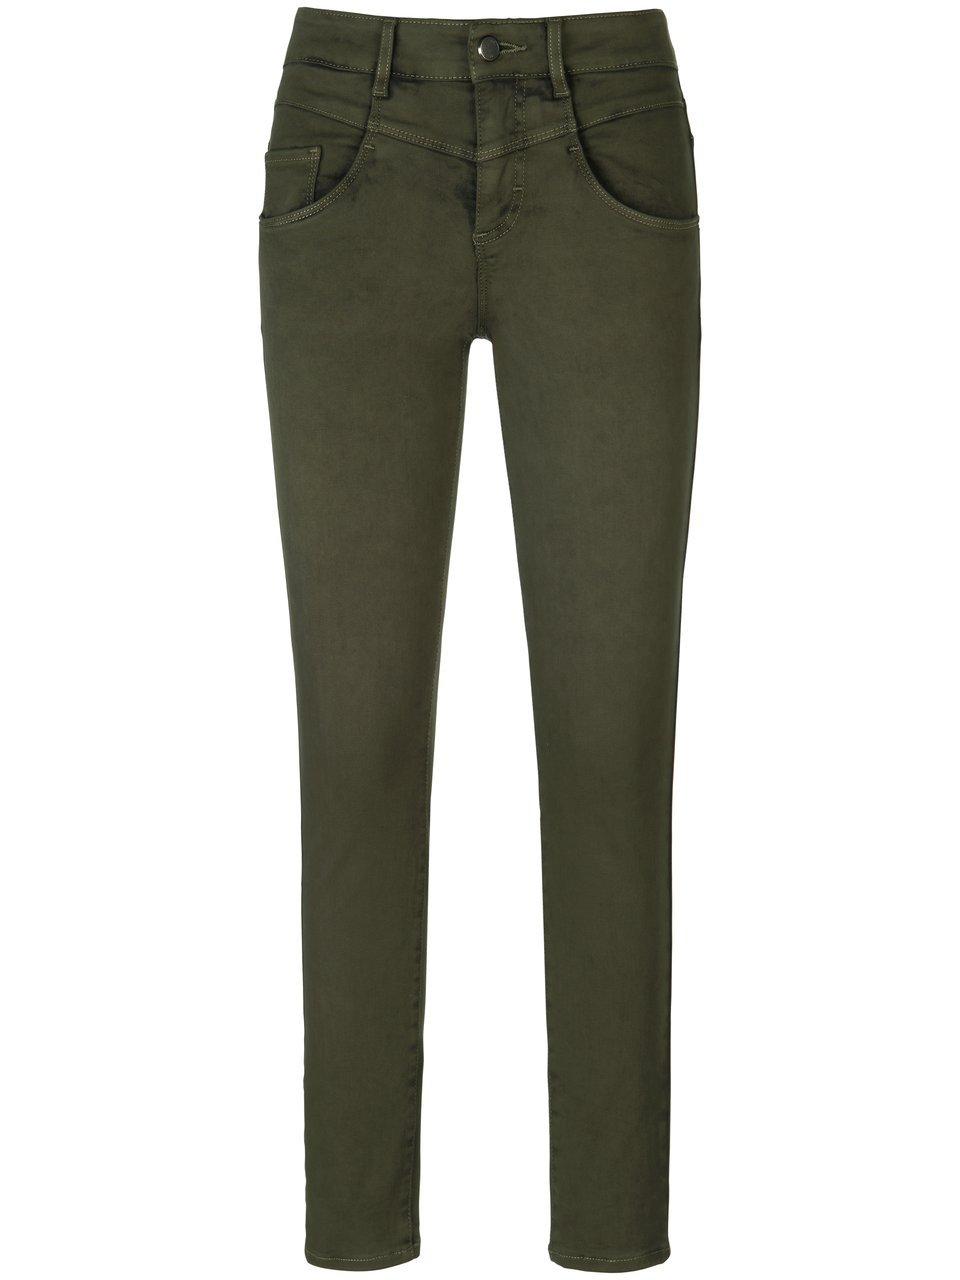 Skinny jeans model Ana Van Brax Feel Good groen